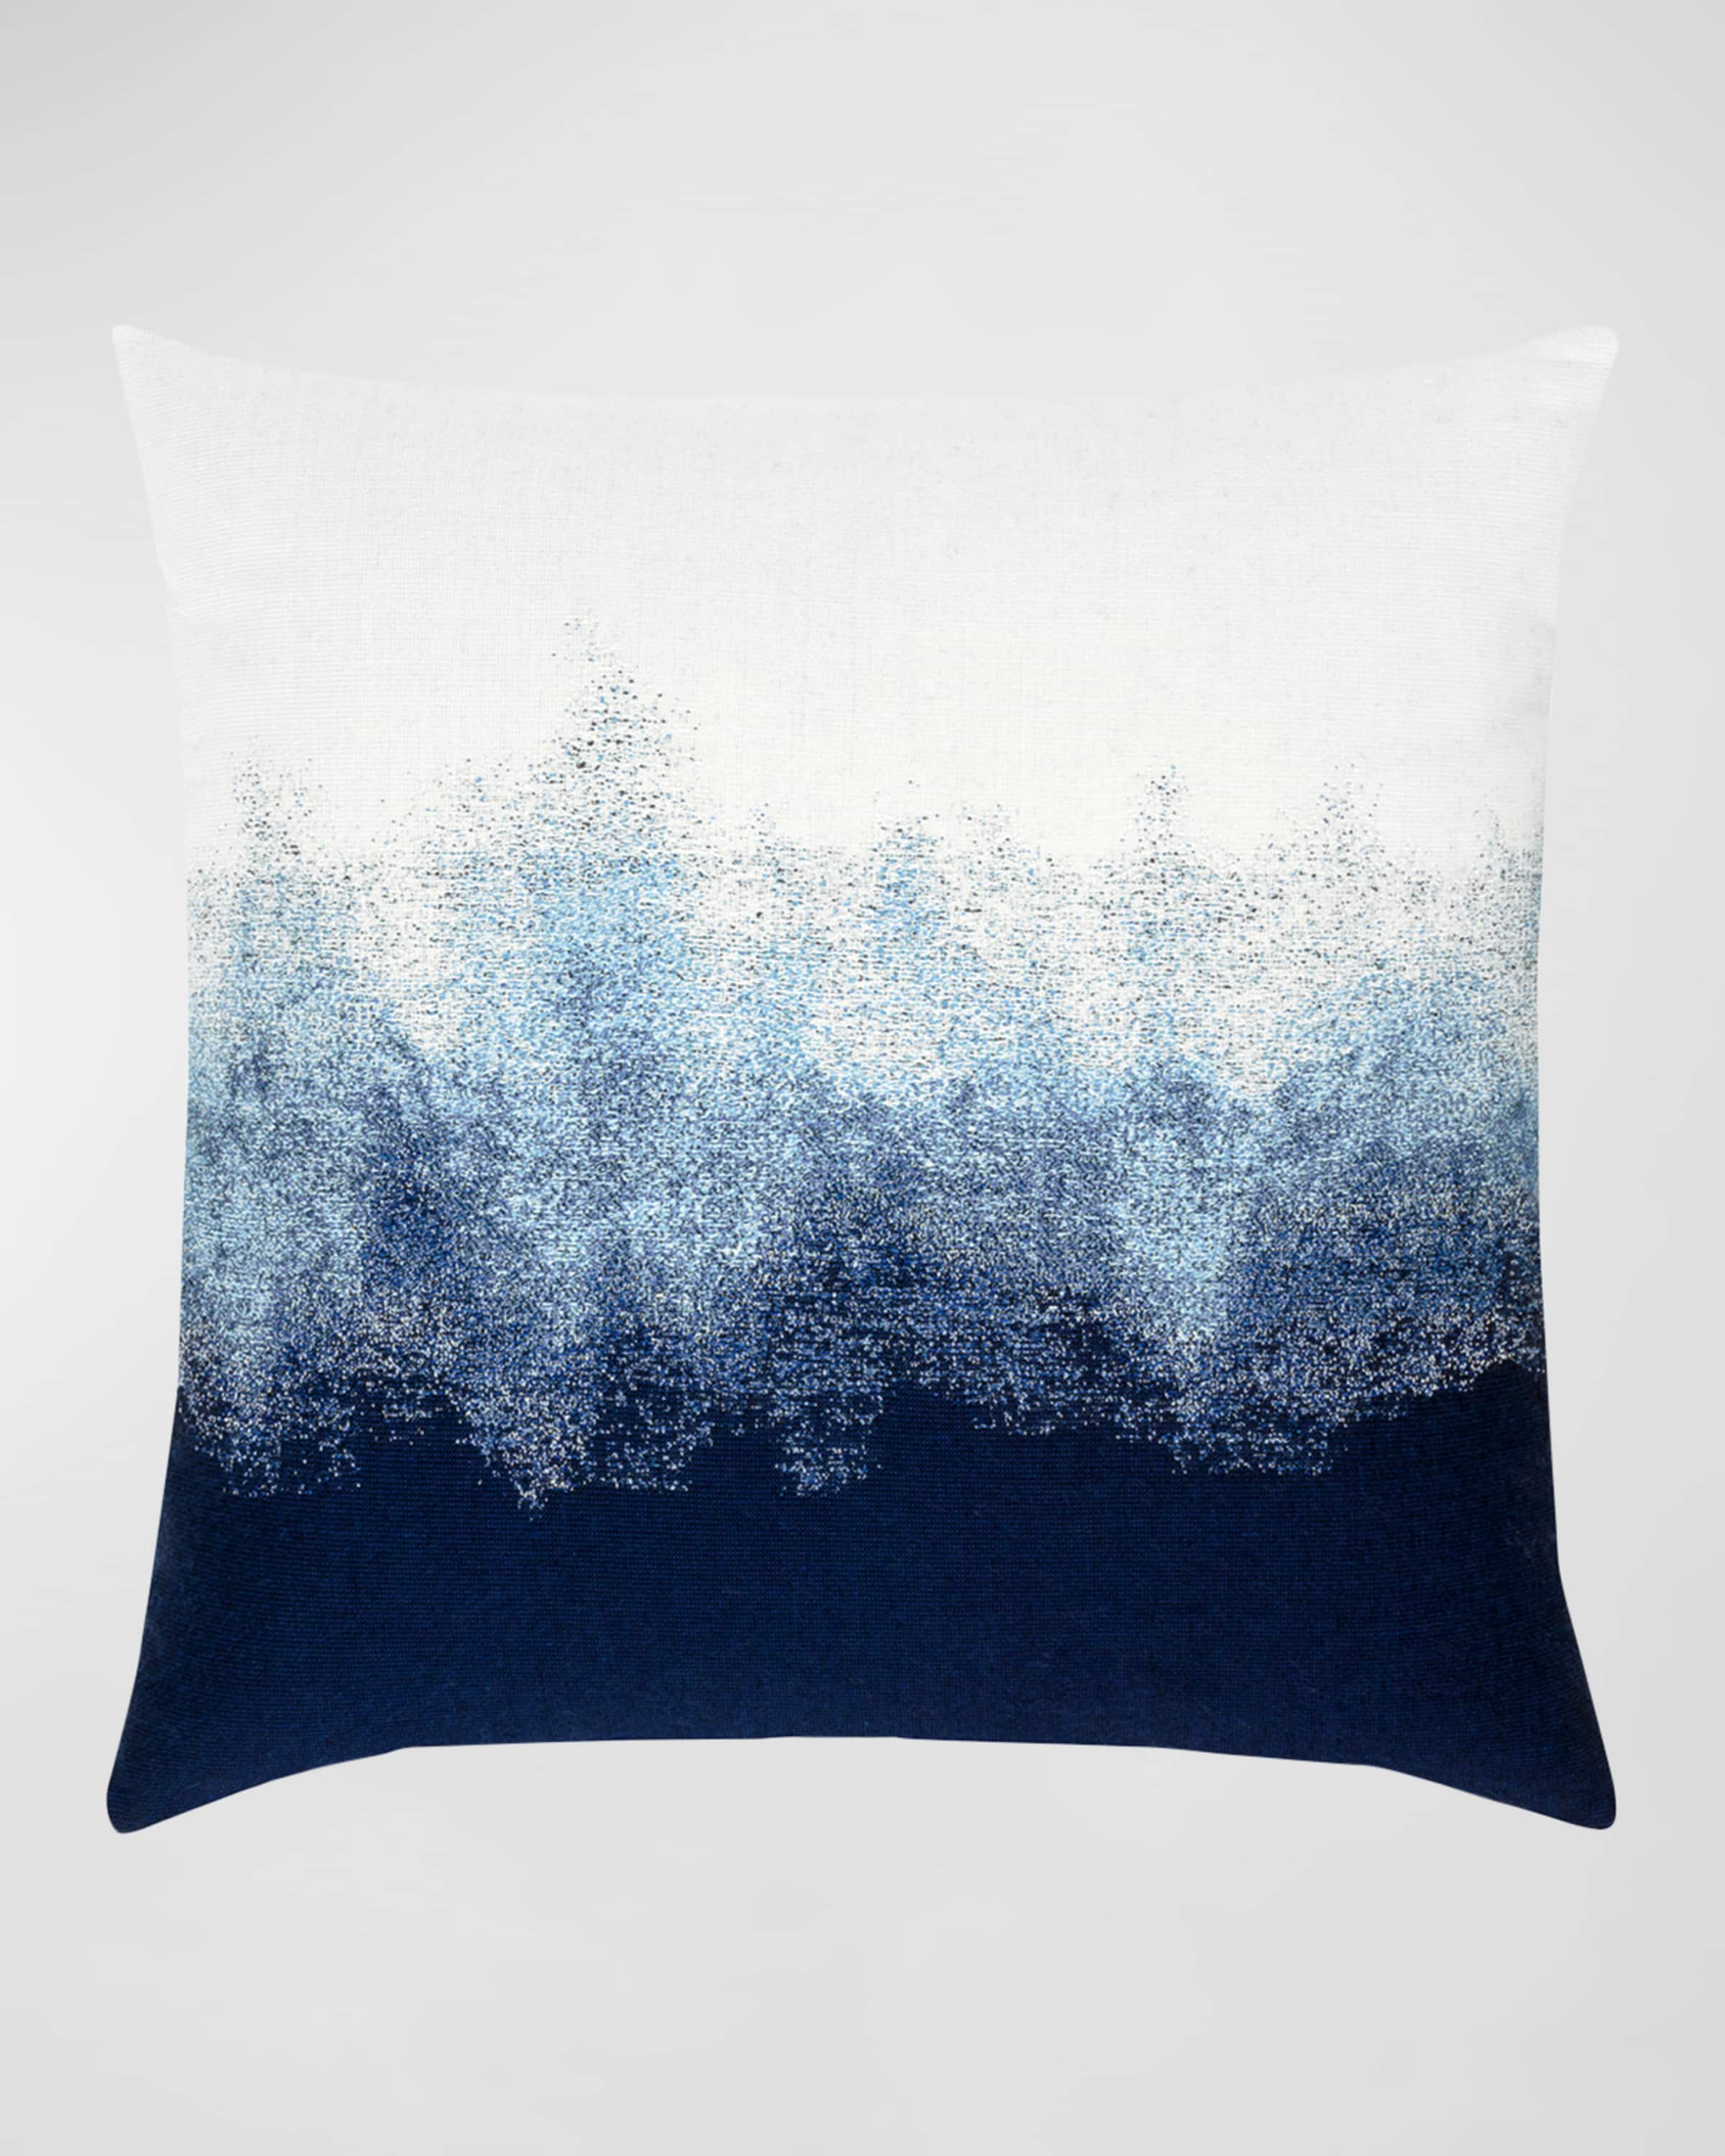 Elaine Smith Artful Sunbrella Pillow, Dark Blue